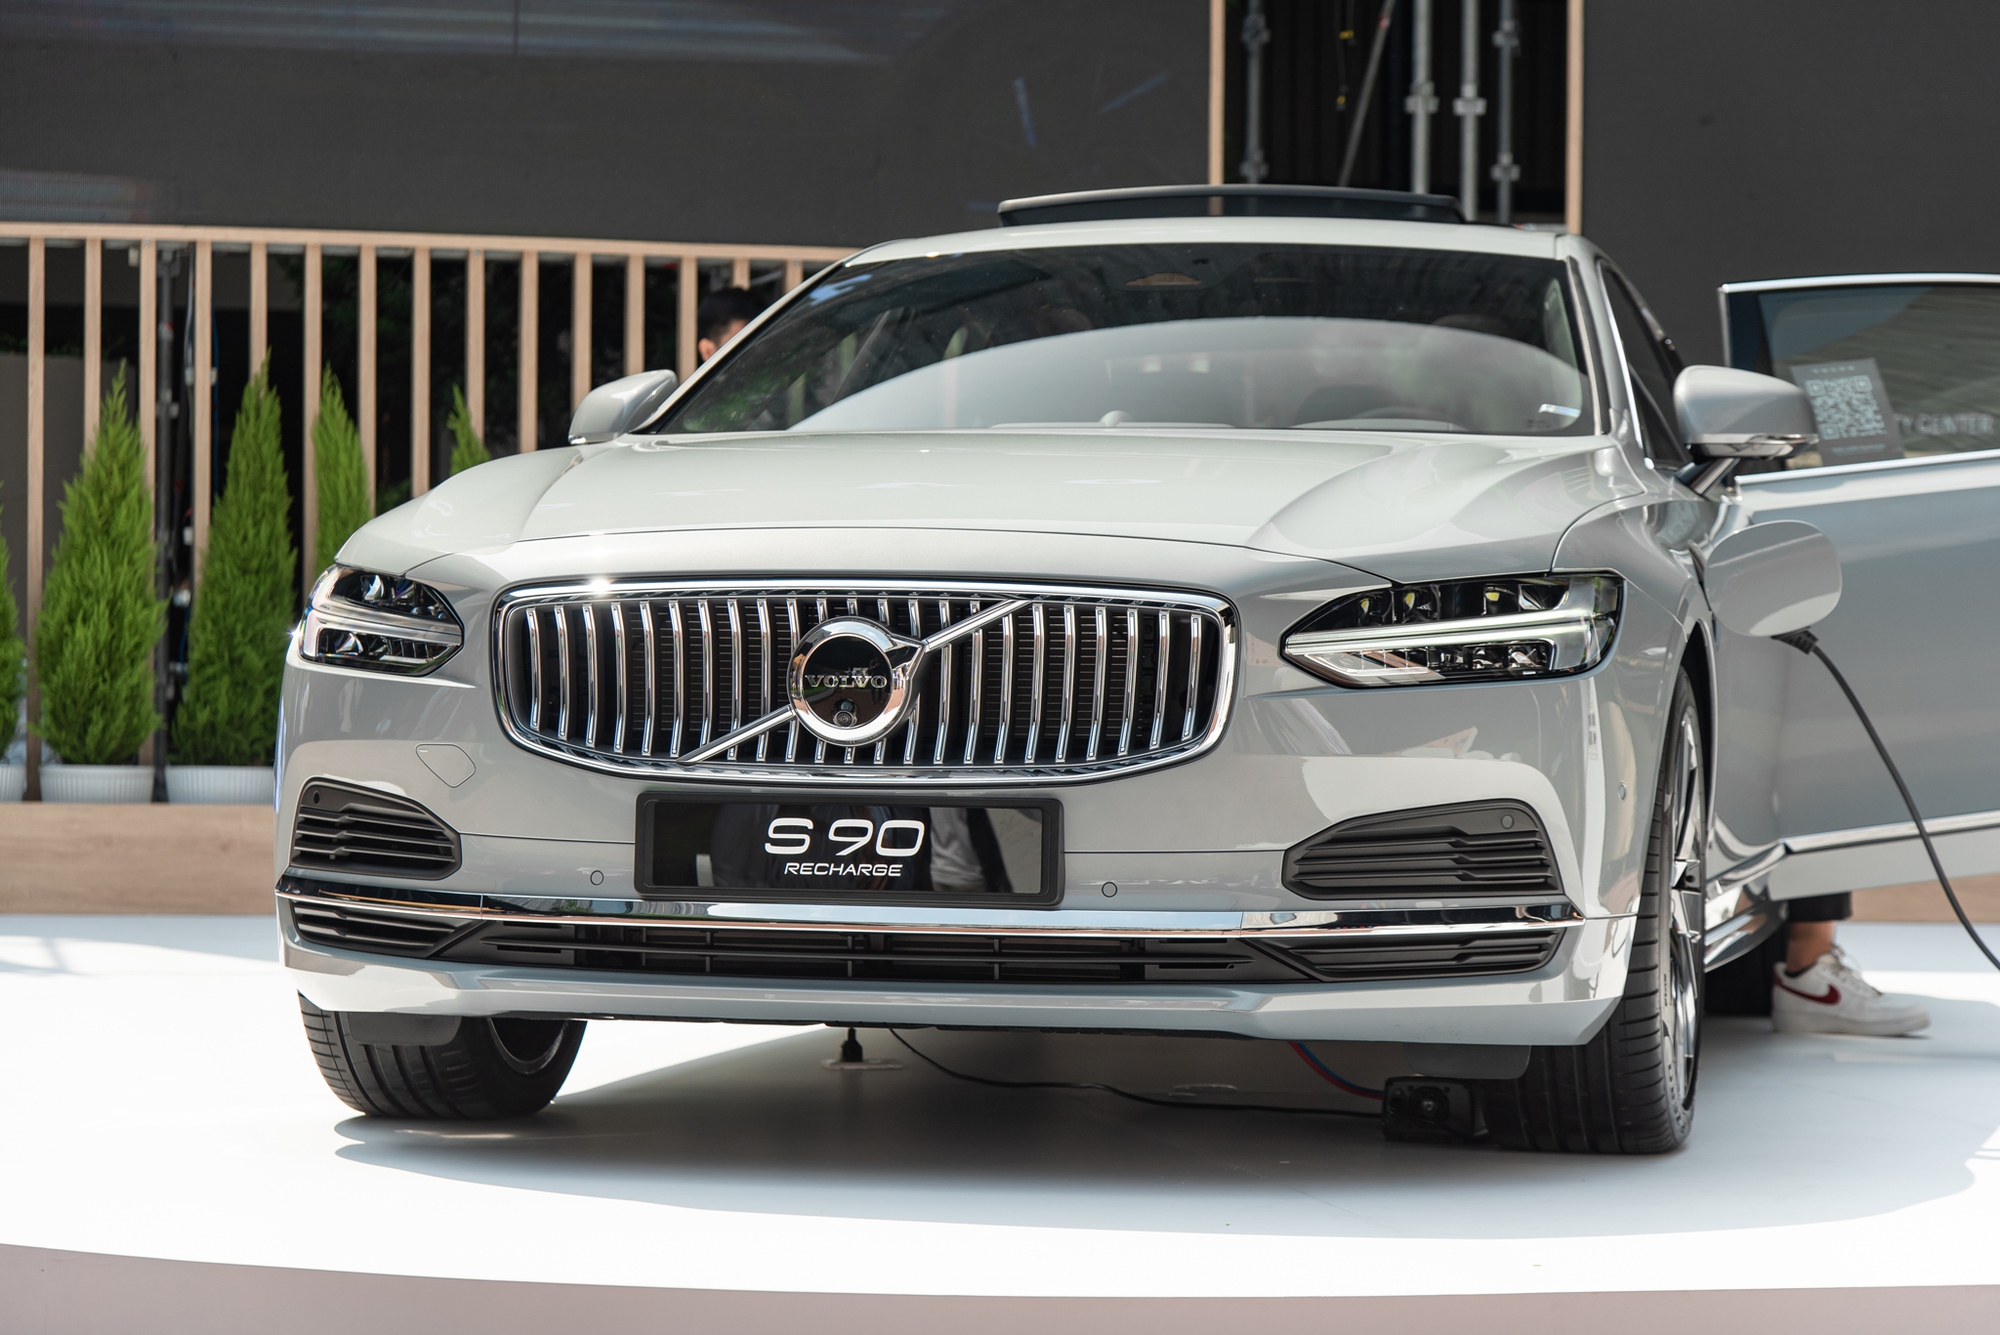 Chi tiết Volvo S90 Recharge vừa ra mắt: Giá 2,89 tỷ đồng, sedan hạng sang cỡ trung rộng và mạnh nhất Việt Nam- Ảnh 2.